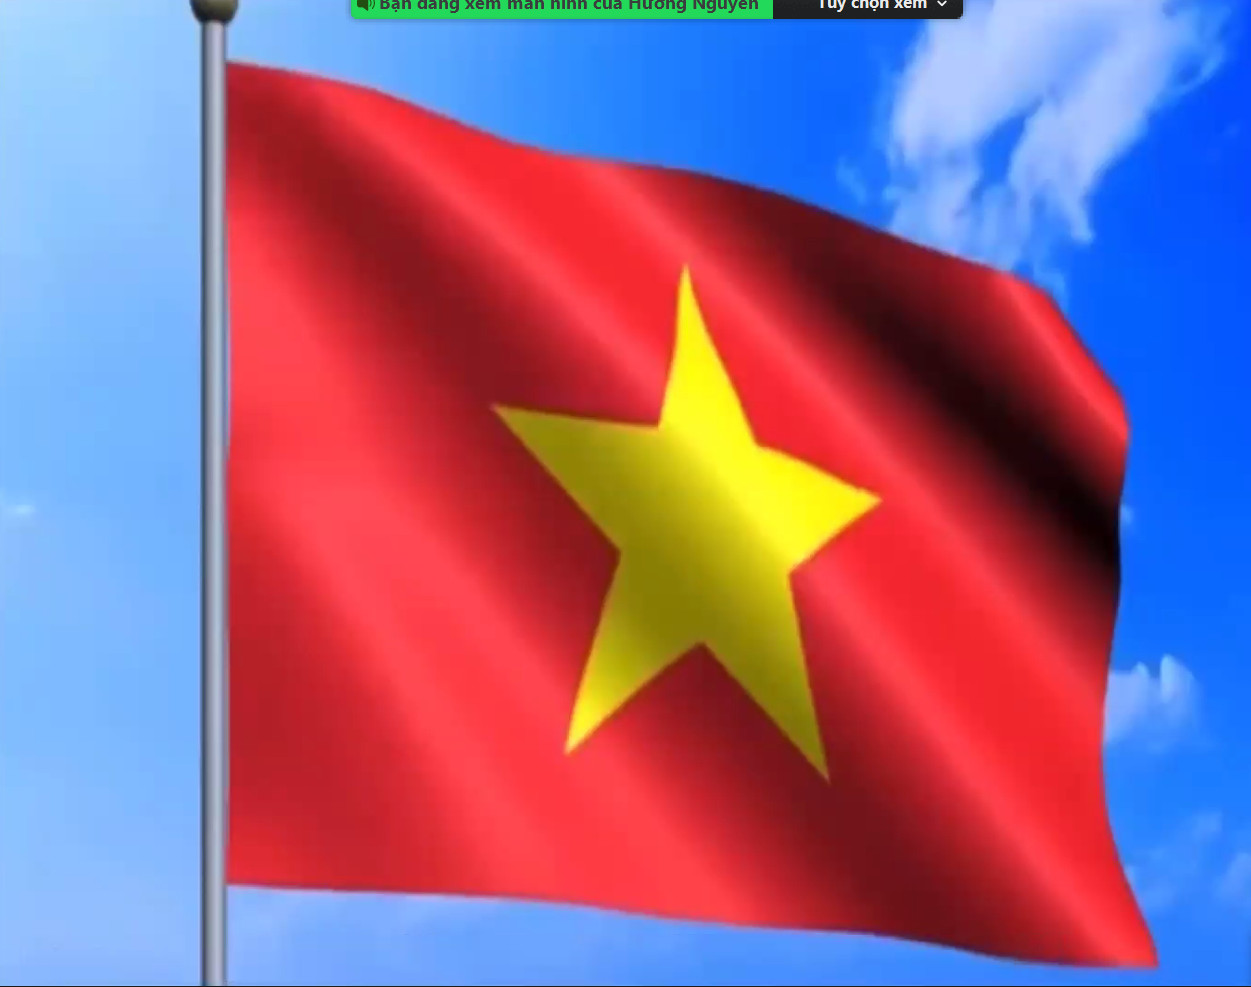 Mỗi chúng ta đều có trách nhiệm với lá cờ Tổ quốc, nó thể hiện tình yêu thương và lòng kiêu hãnh đối với đất nước. Đặc biệt vào năm 2024, khi Việt Nam đang trong quá trình phát triển mạnh mẽ và vươn lên trên thế giới, ý nghĩa của lá cờ Tổ quốc ngày càng to lớn. Hãy cùng chiêm ngưỡng hình ảnh tuyệt đẹp của lá cờ Tổ quốc huy hoàng này!